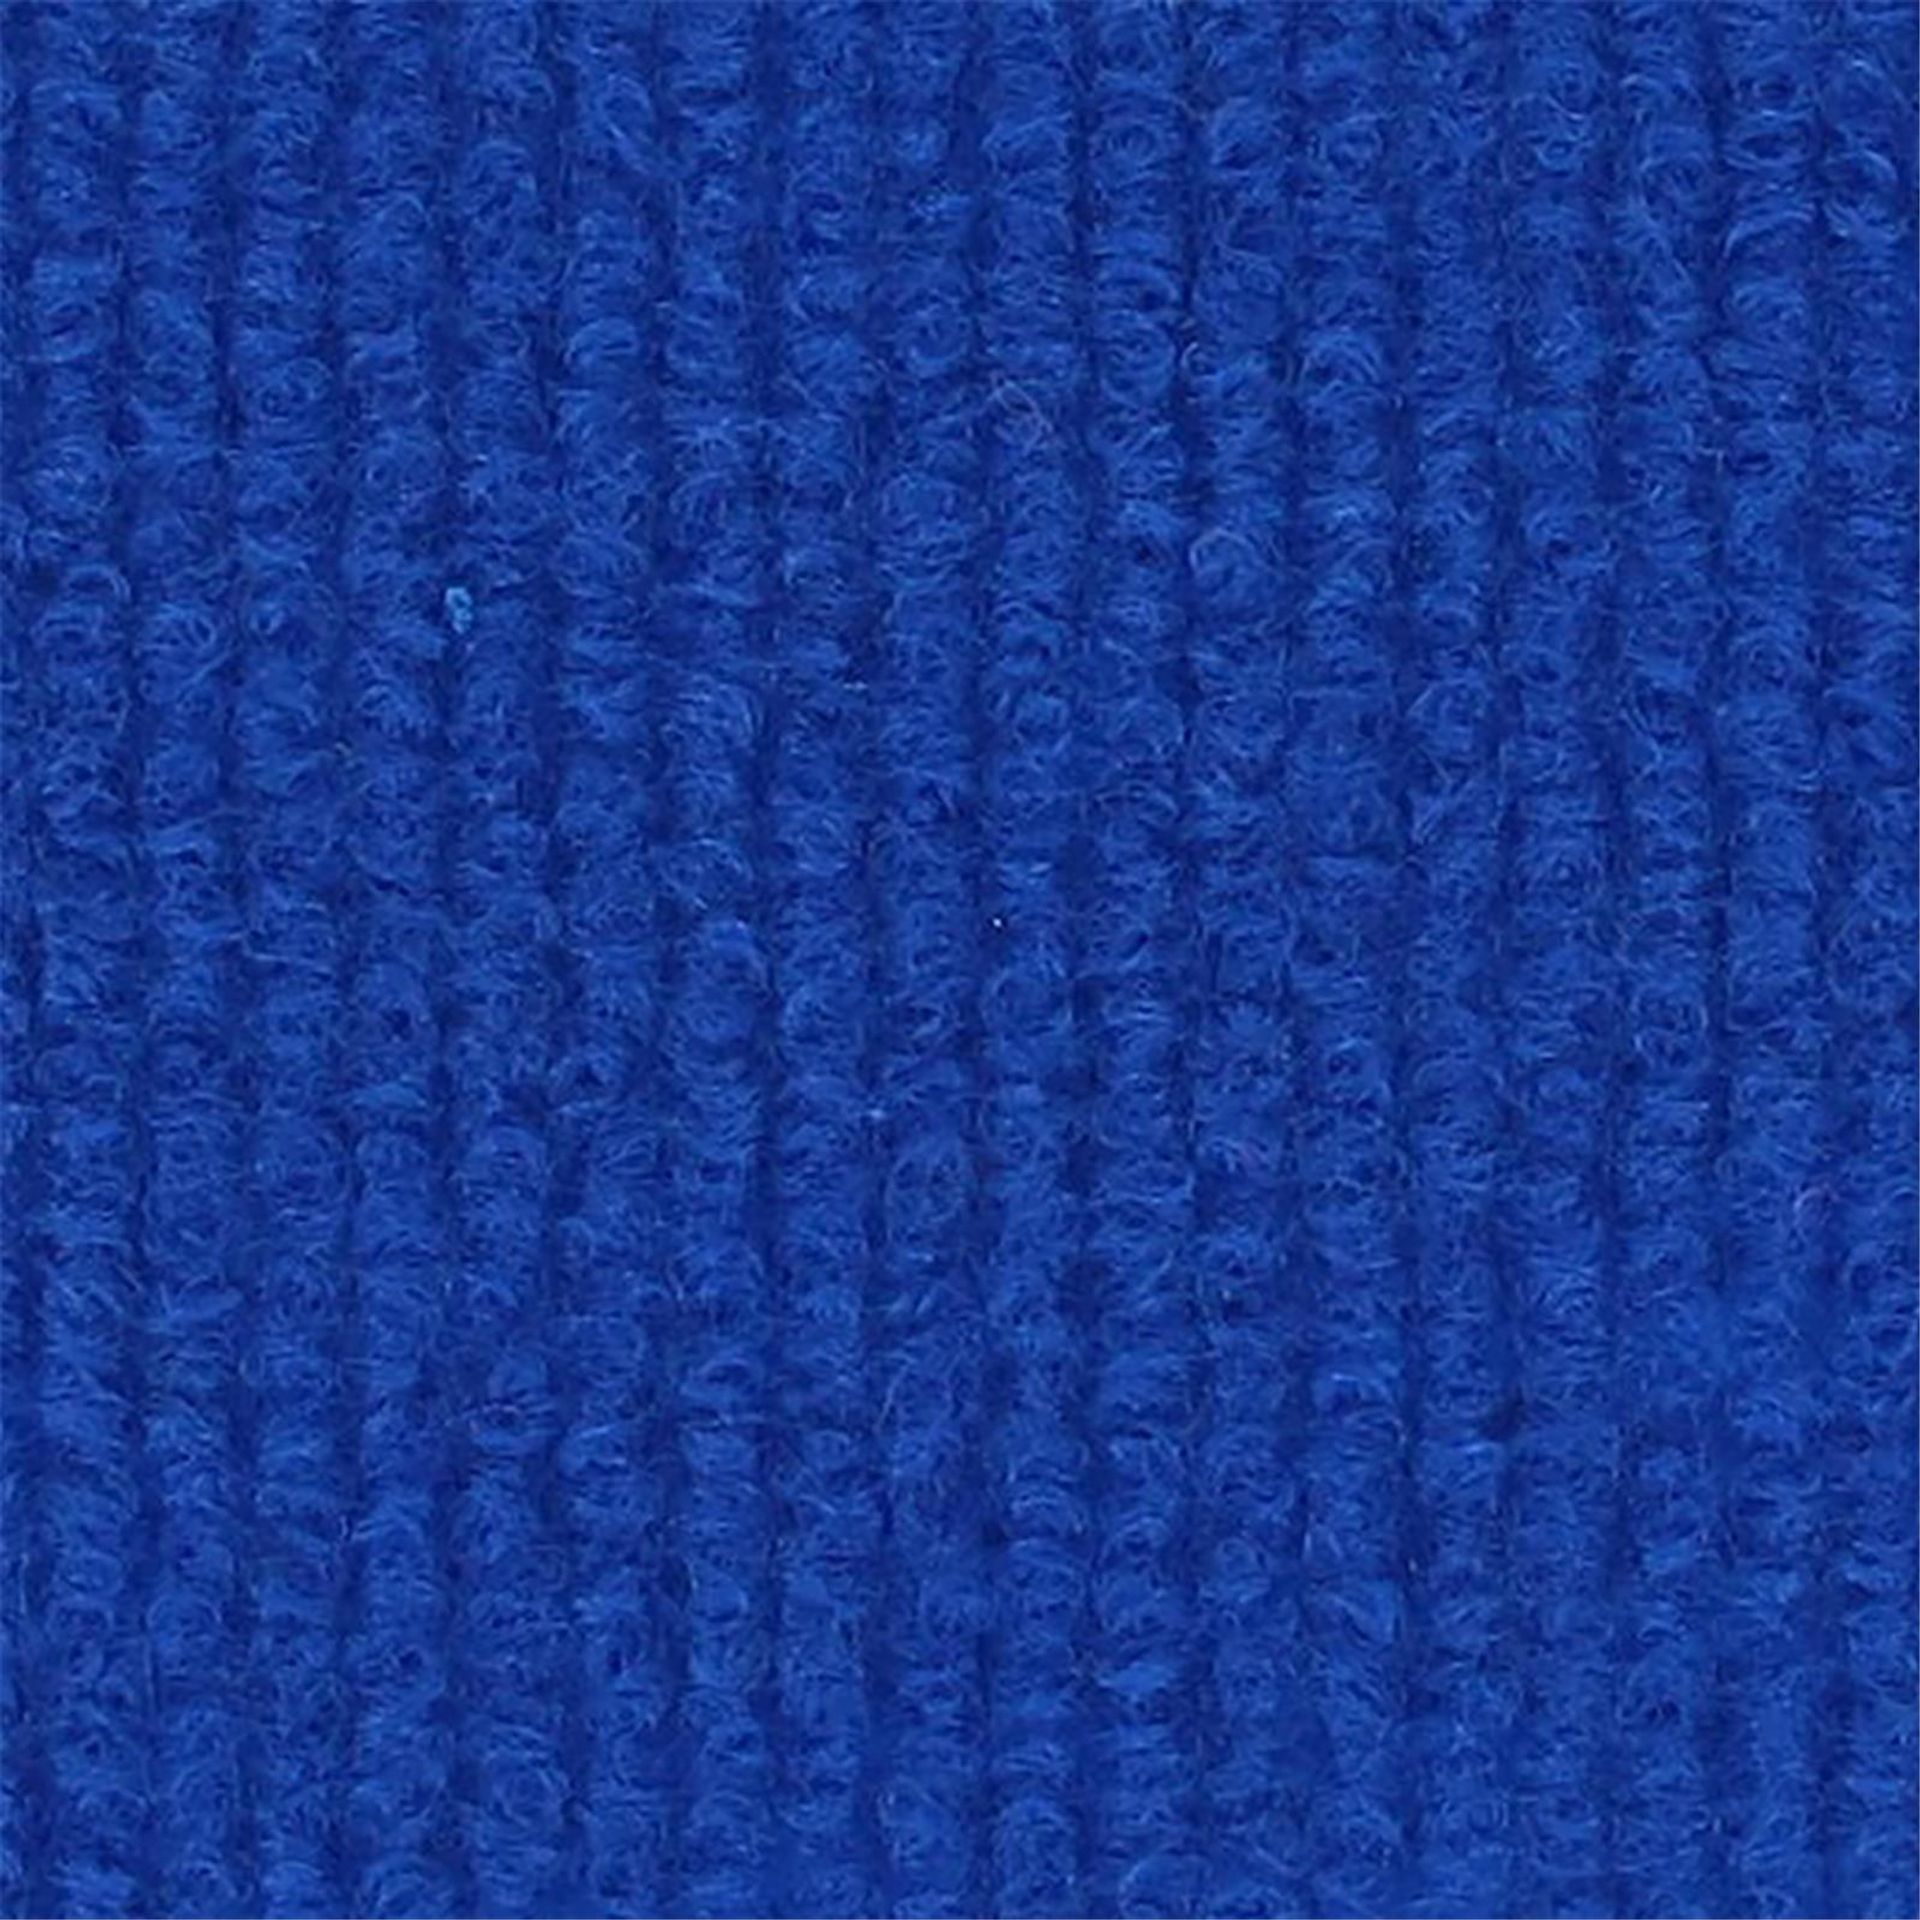 Messeboden Rips-Nadelvlies EXPOLINE Electric Blue 0064 100qm ohne Schutzfolie - Rollenbreite 200 cm